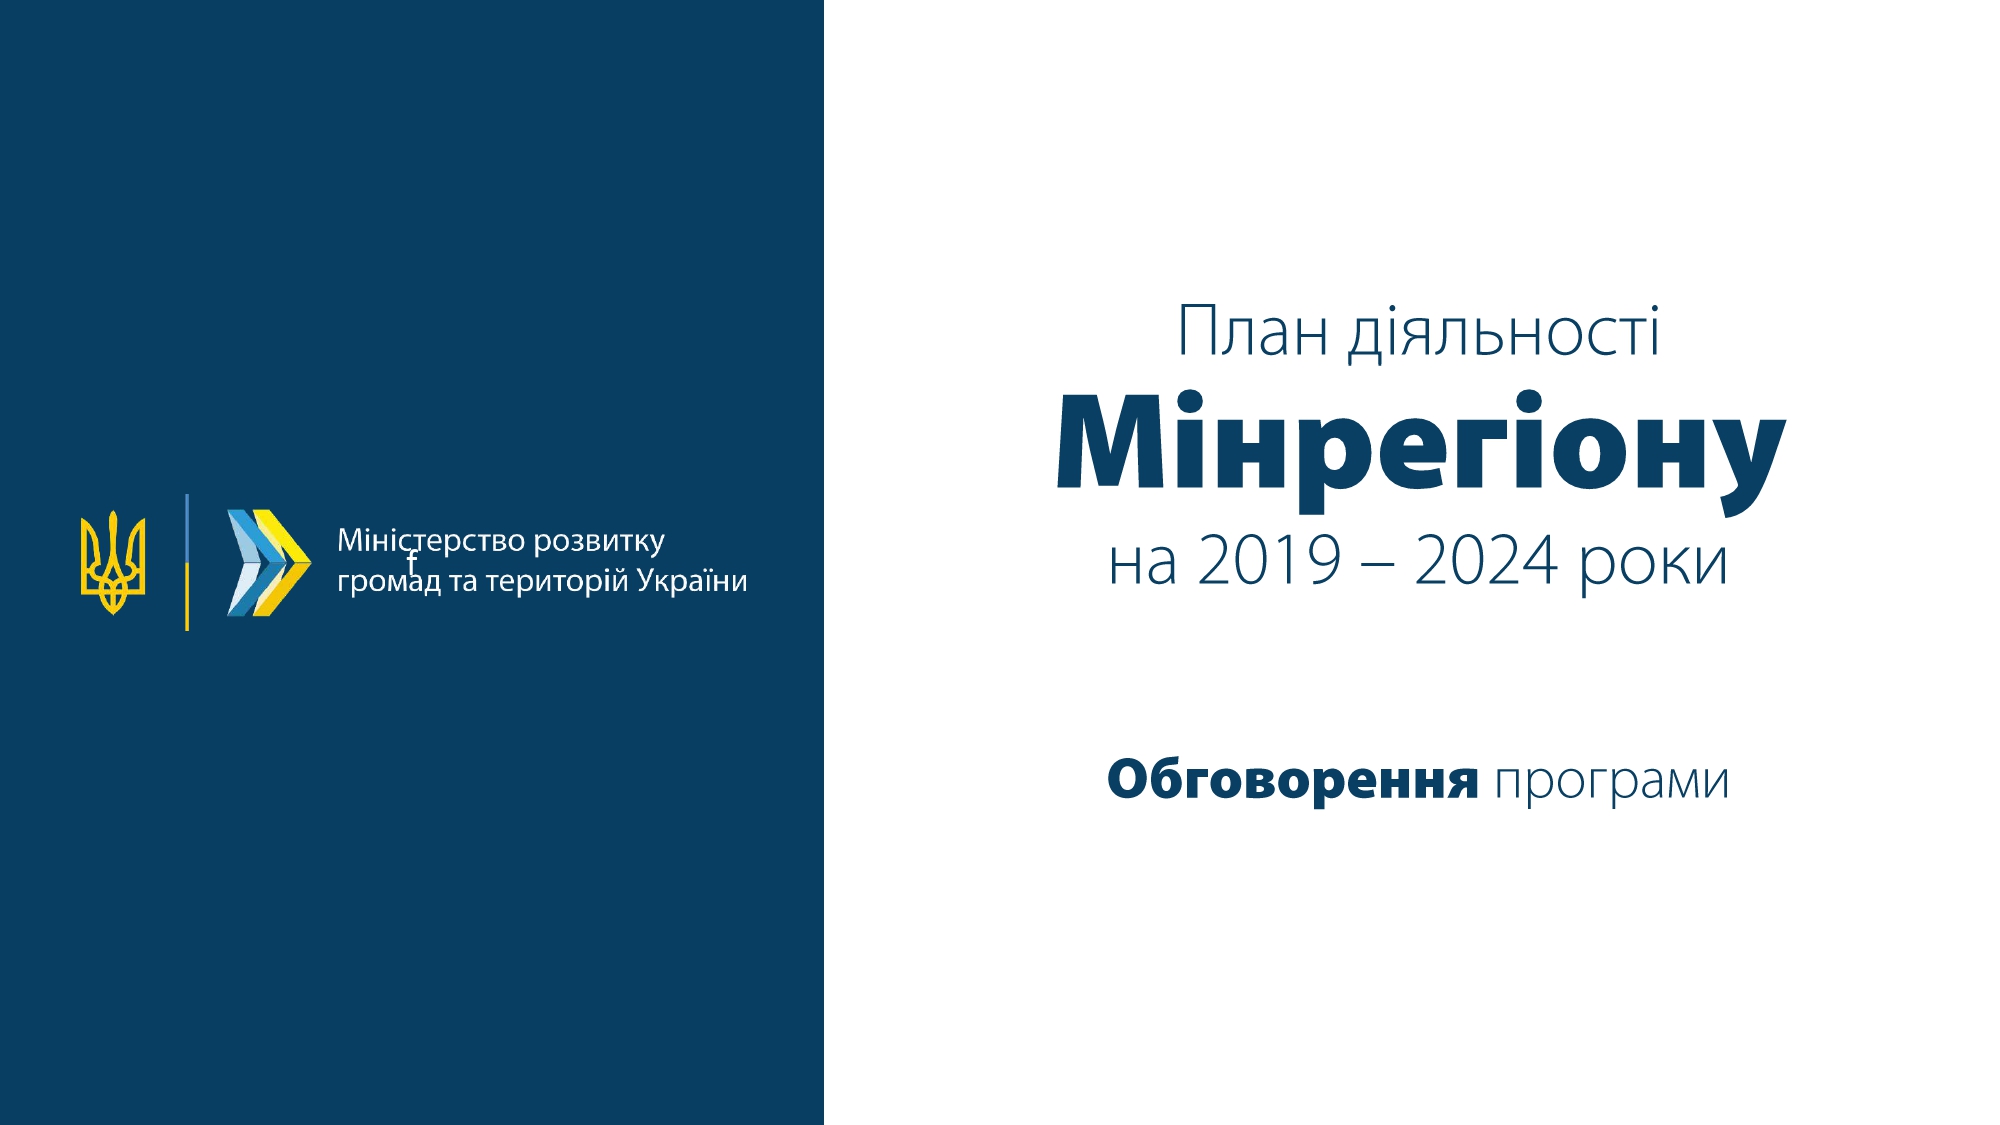 Мінрегіон презентував план діяльності на 2019-2024 роки